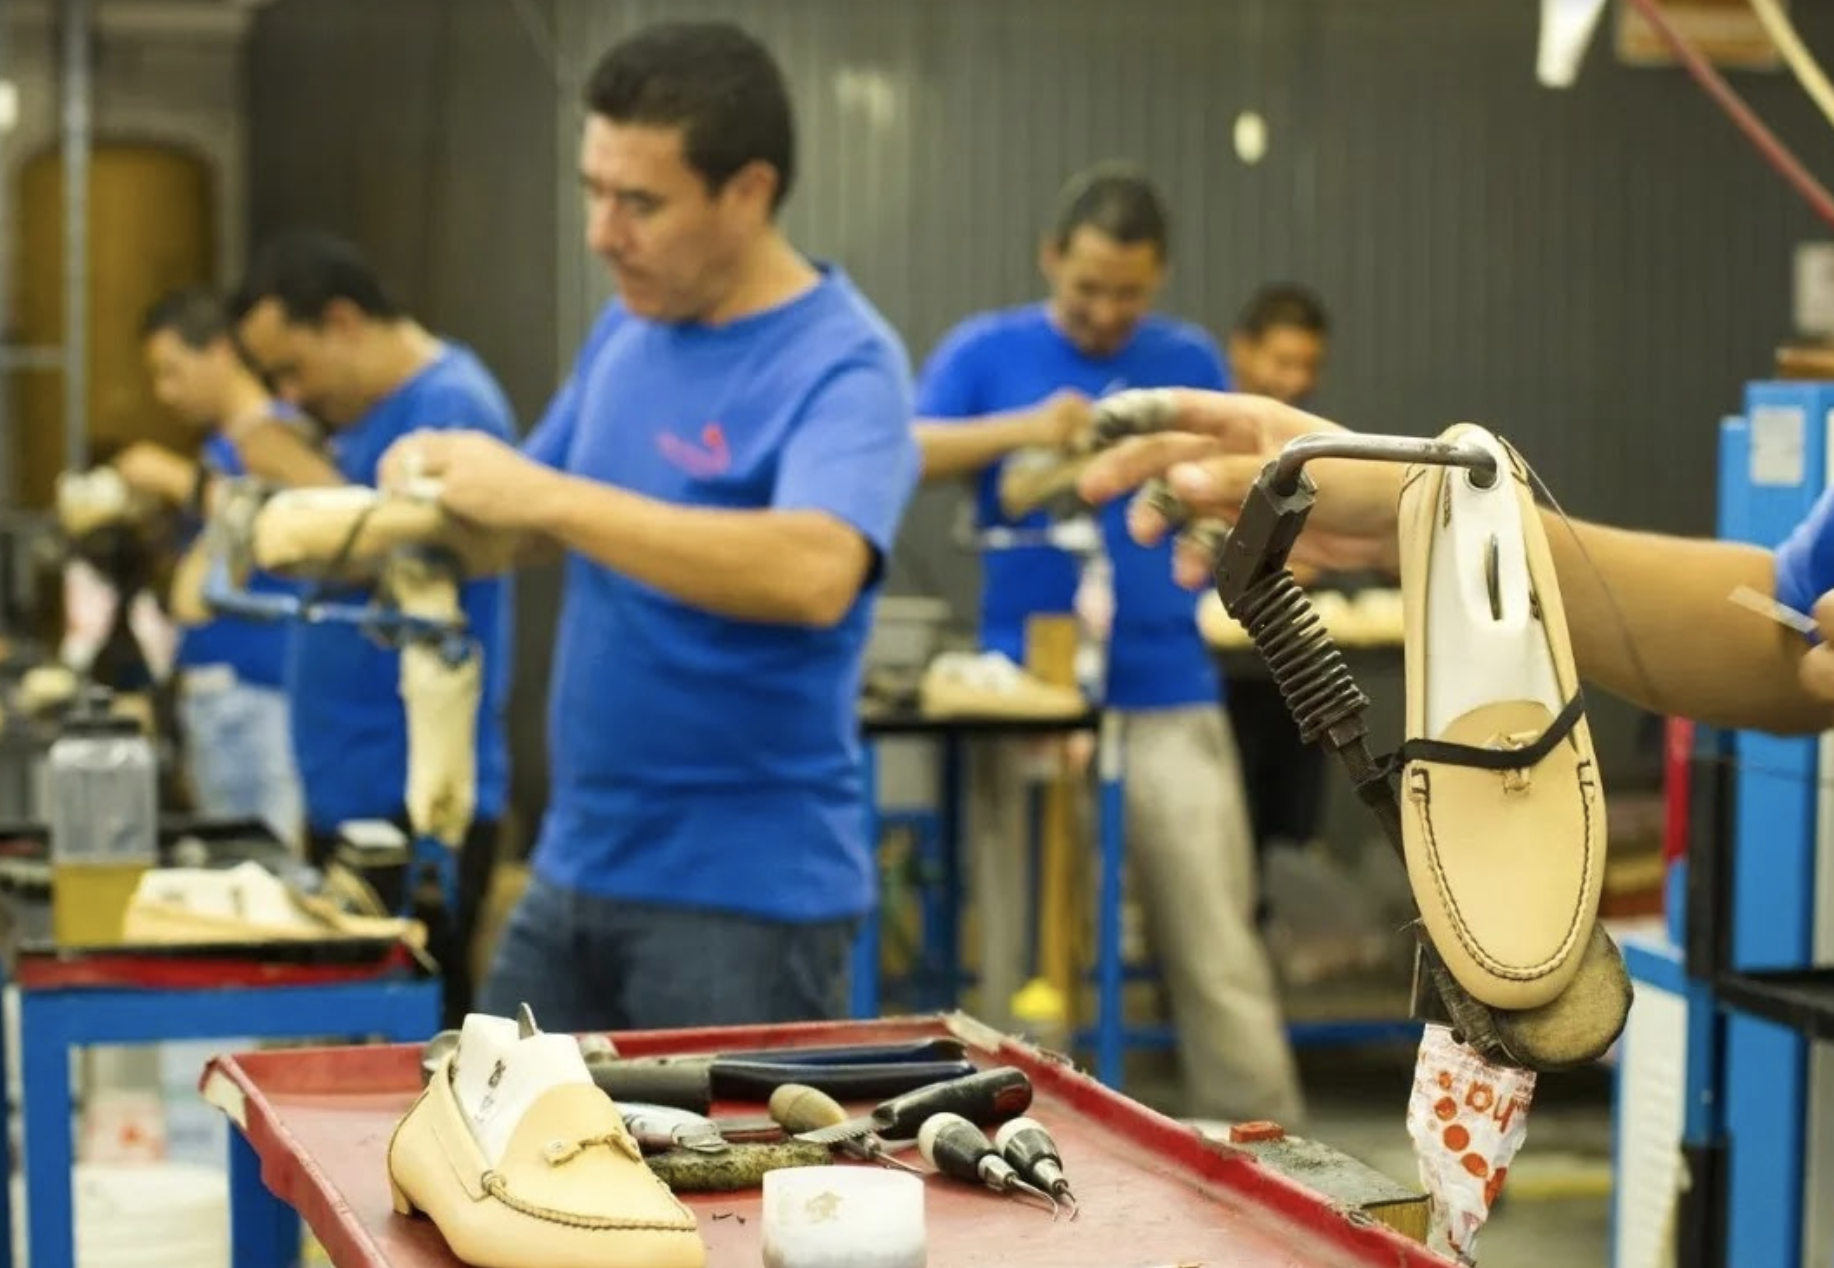 México con paso firme a la cima de la industria global de calzado